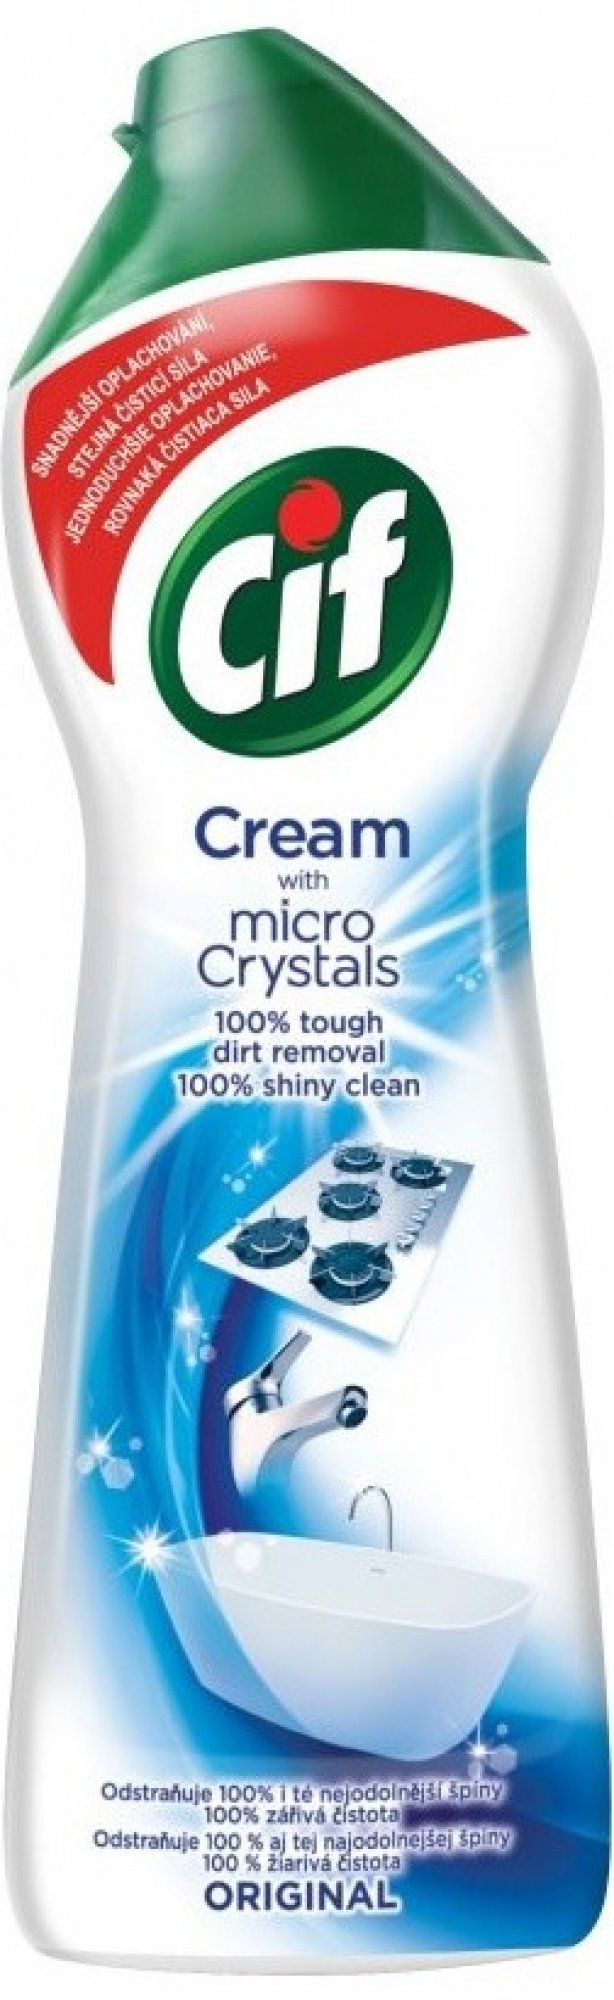 Cif Cream Original krémový abrazivní čistící přípravek 250 ml